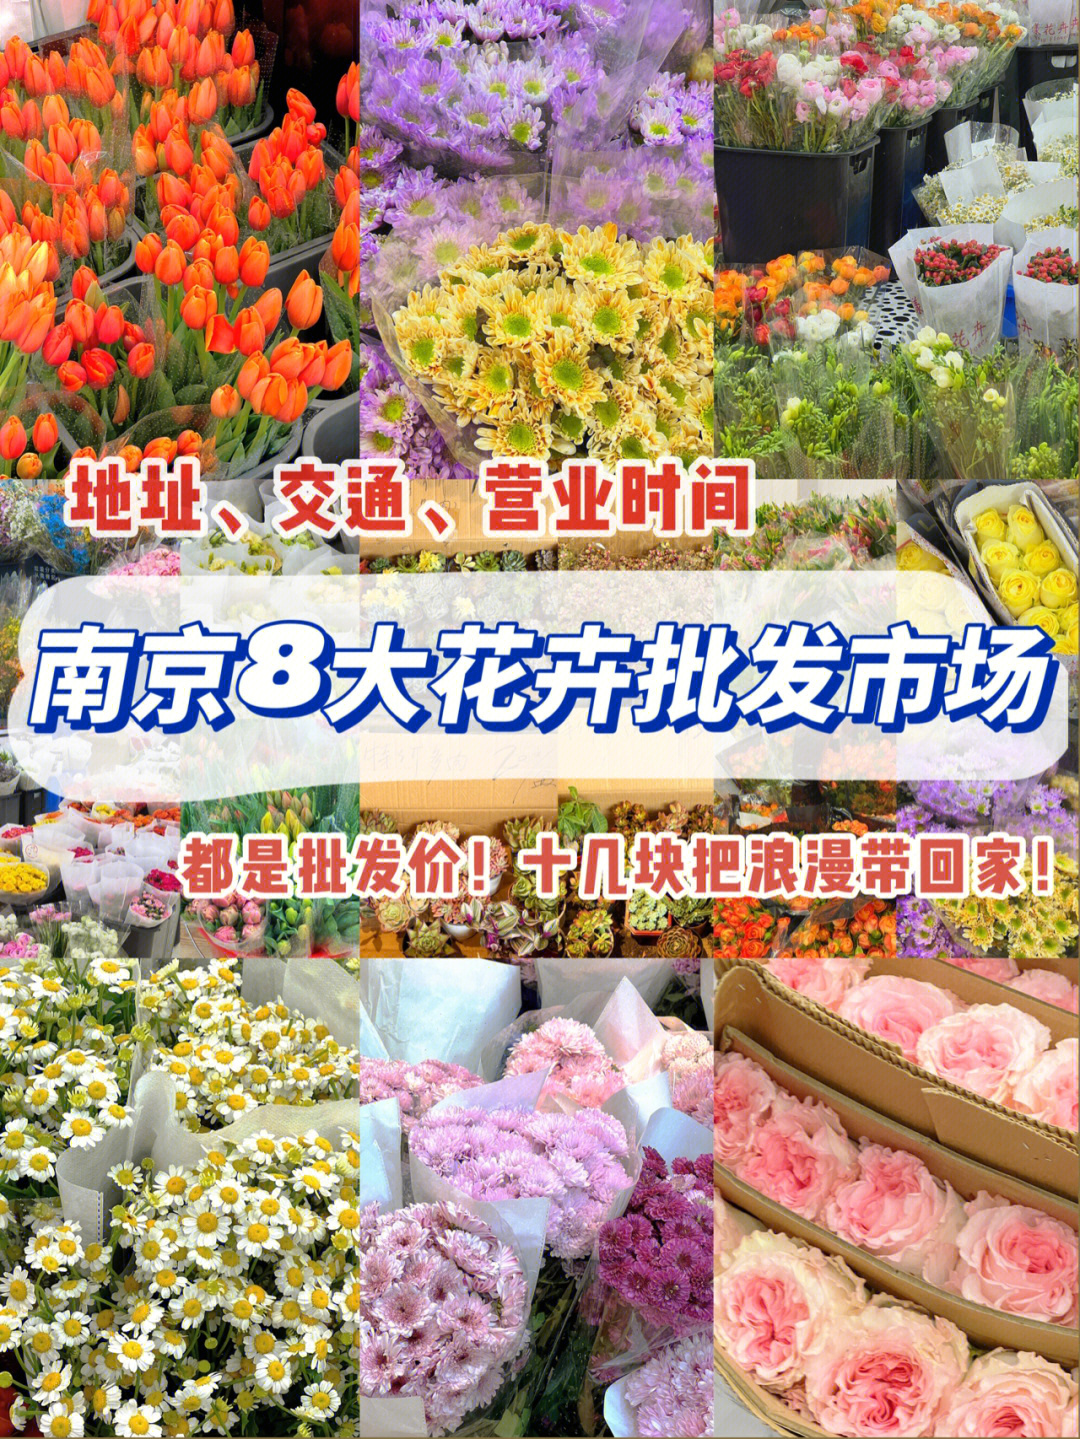 南京八大花卉批发市场收藏起来挨个逛